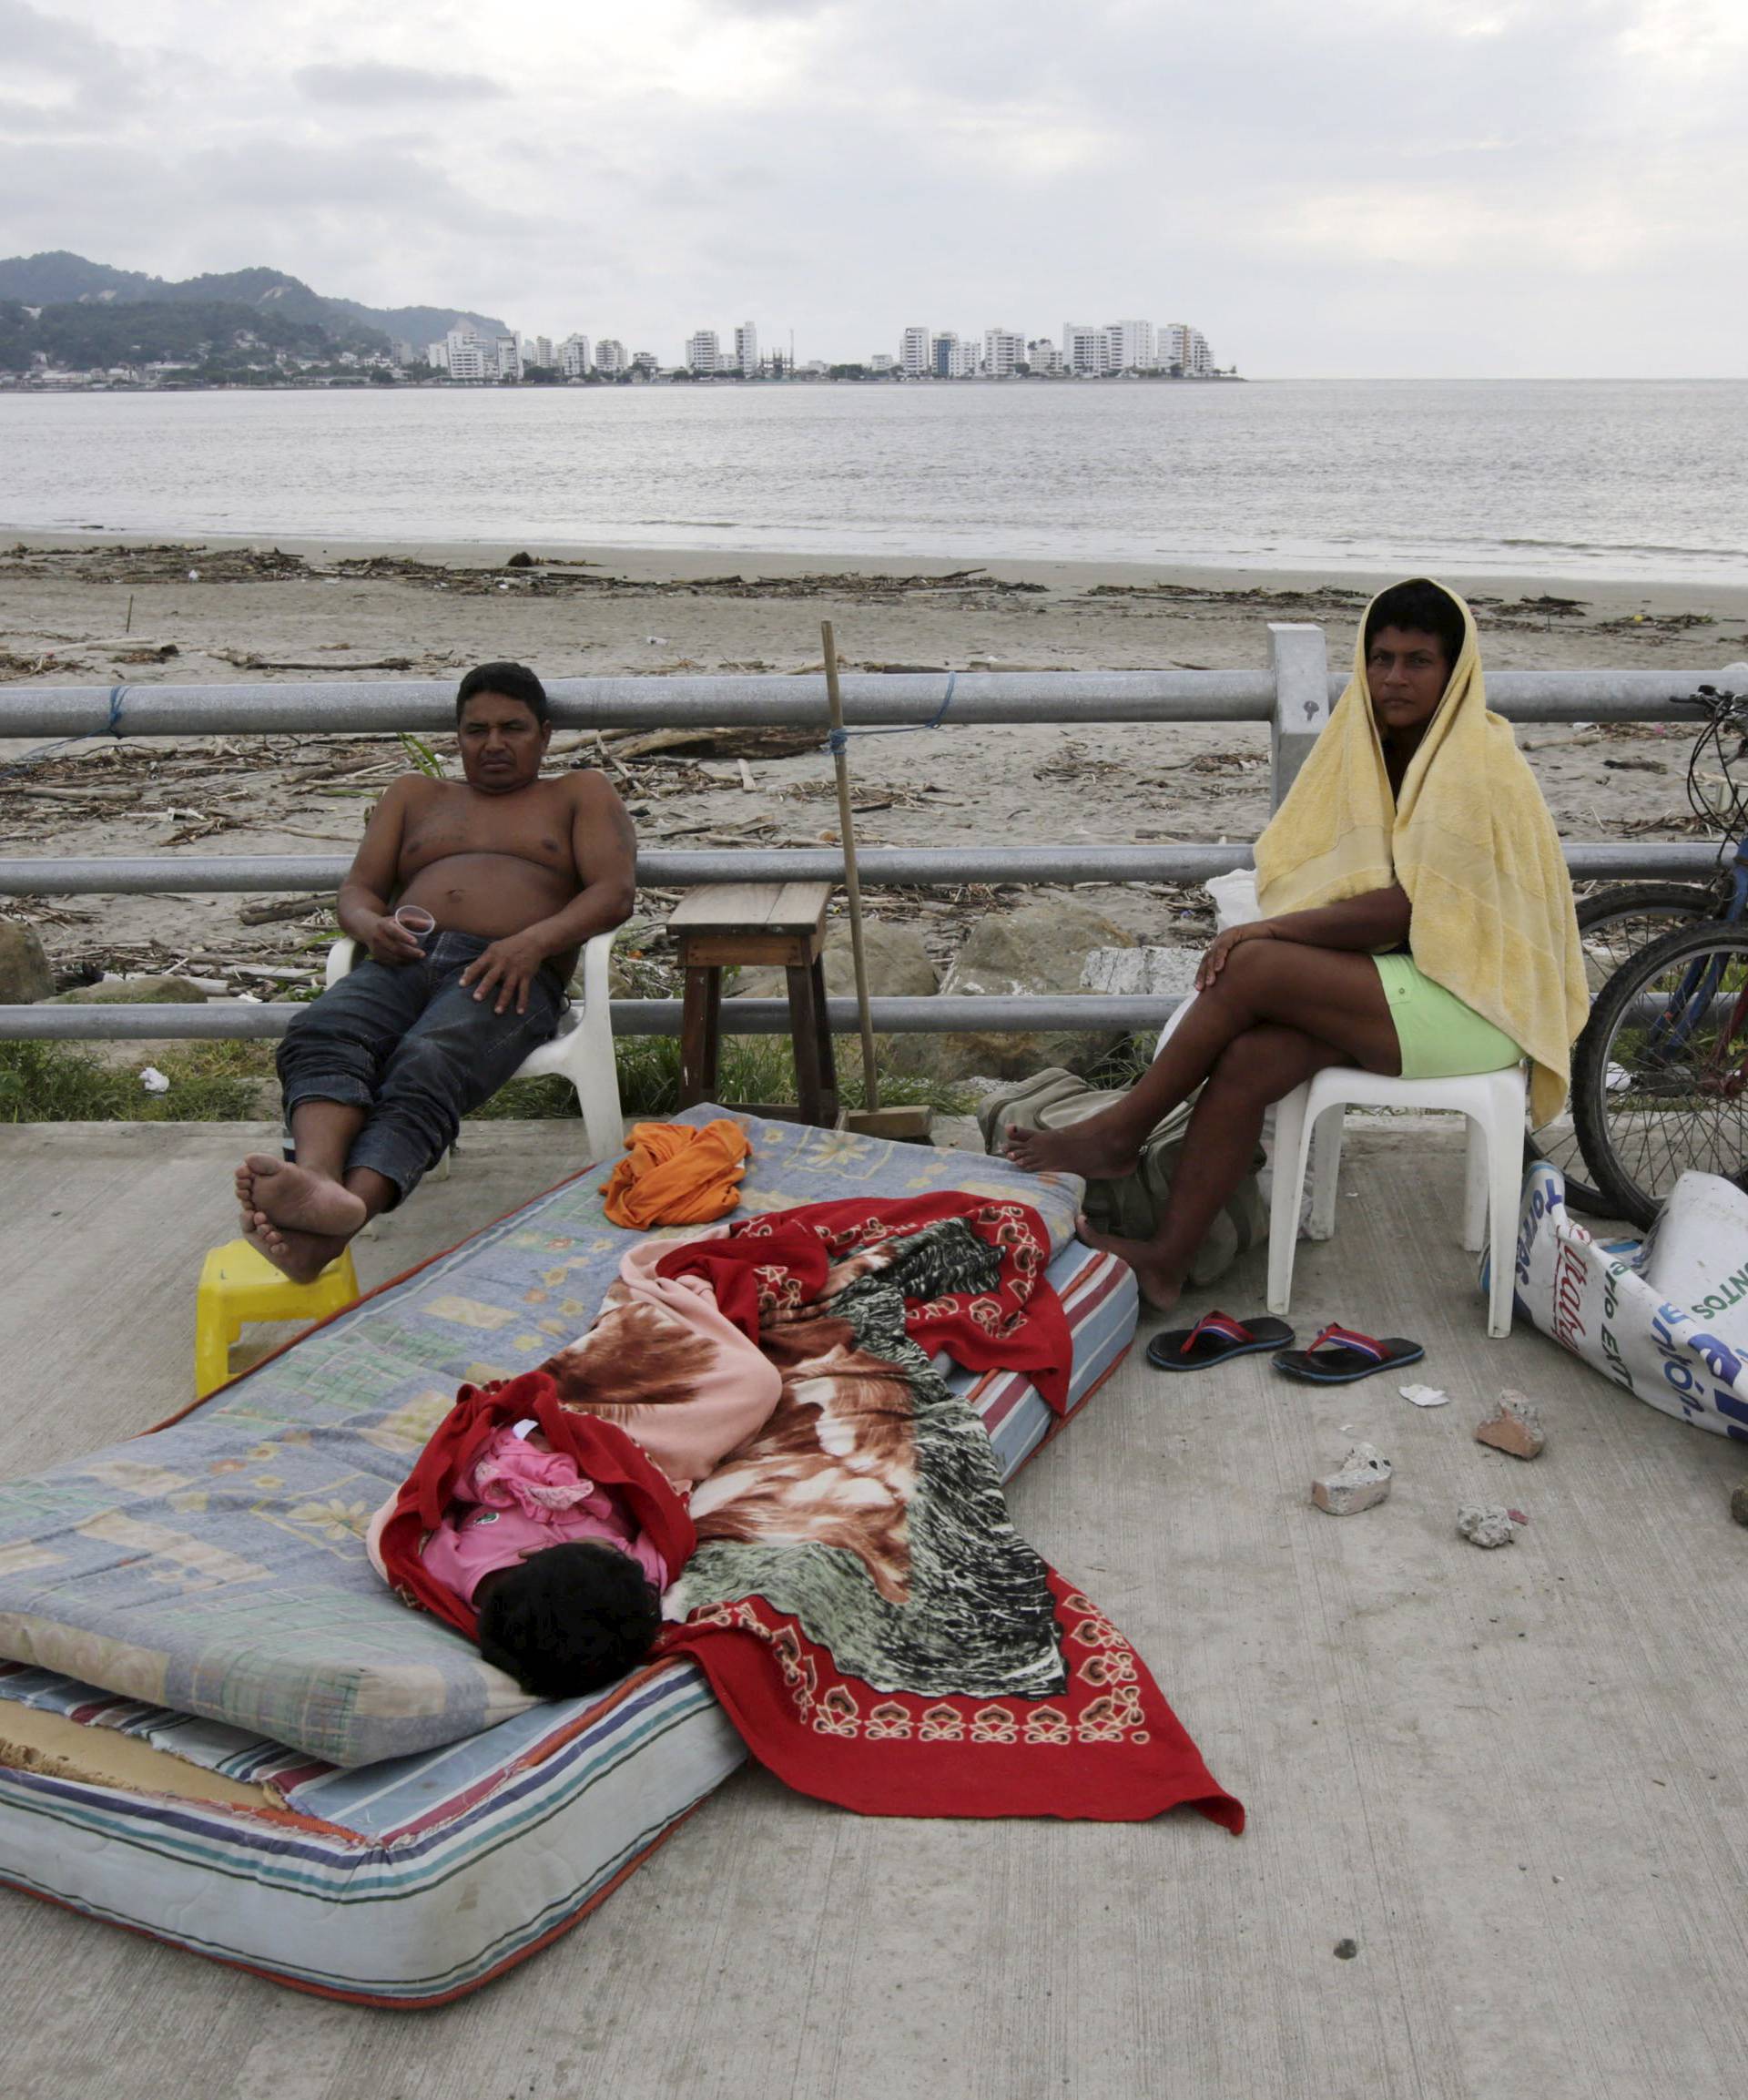 A family rests along Bahia de Caraquez following the earthquake in Ecuador